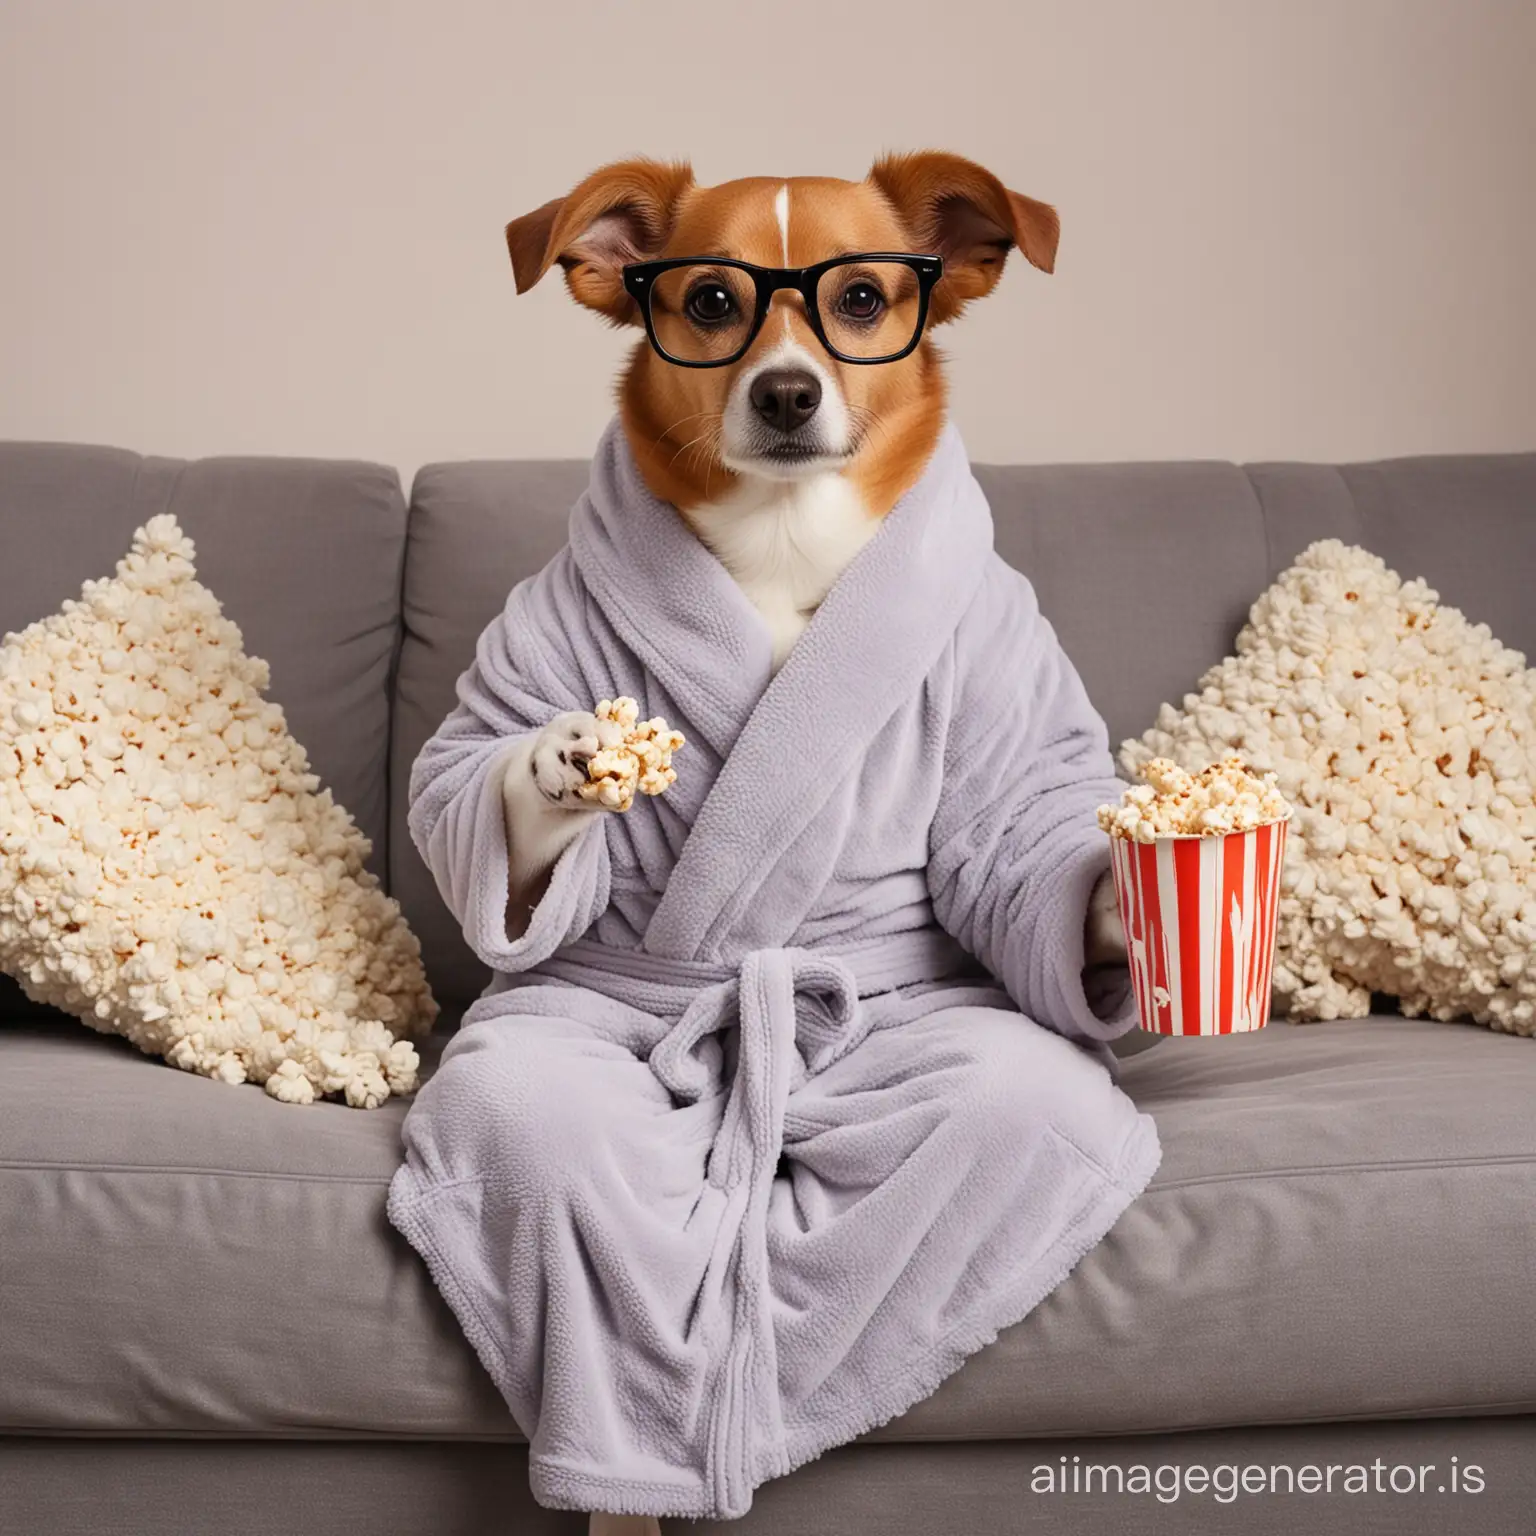 Cozy-Evening-Dog-in-Bathrobe-Enjoying-Popcorn-on-Sofa